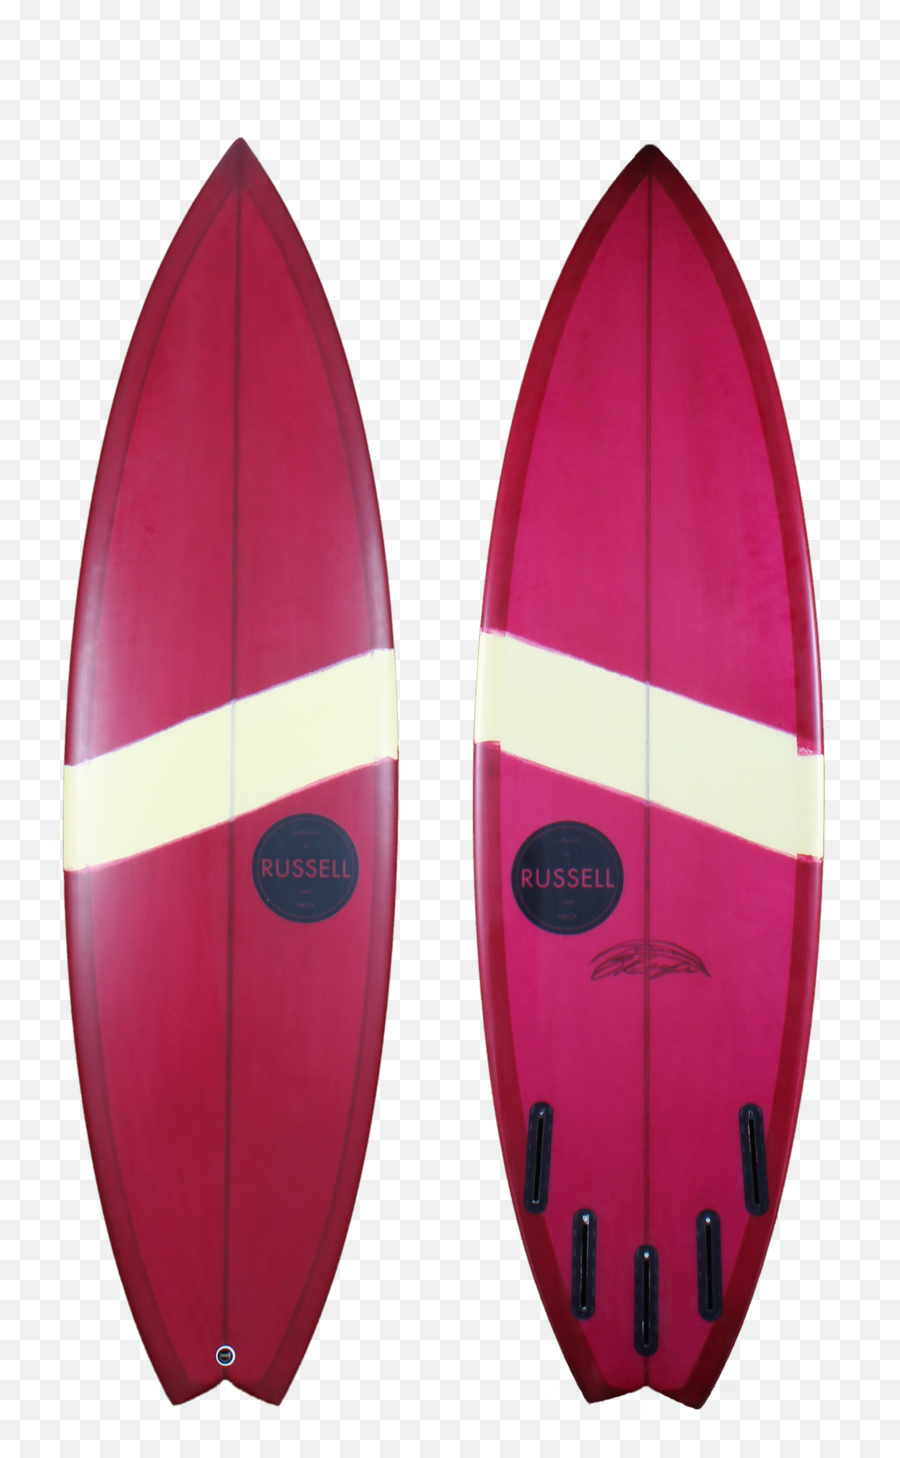 Board Models U2014 Russell Surfboards Png Surfboard